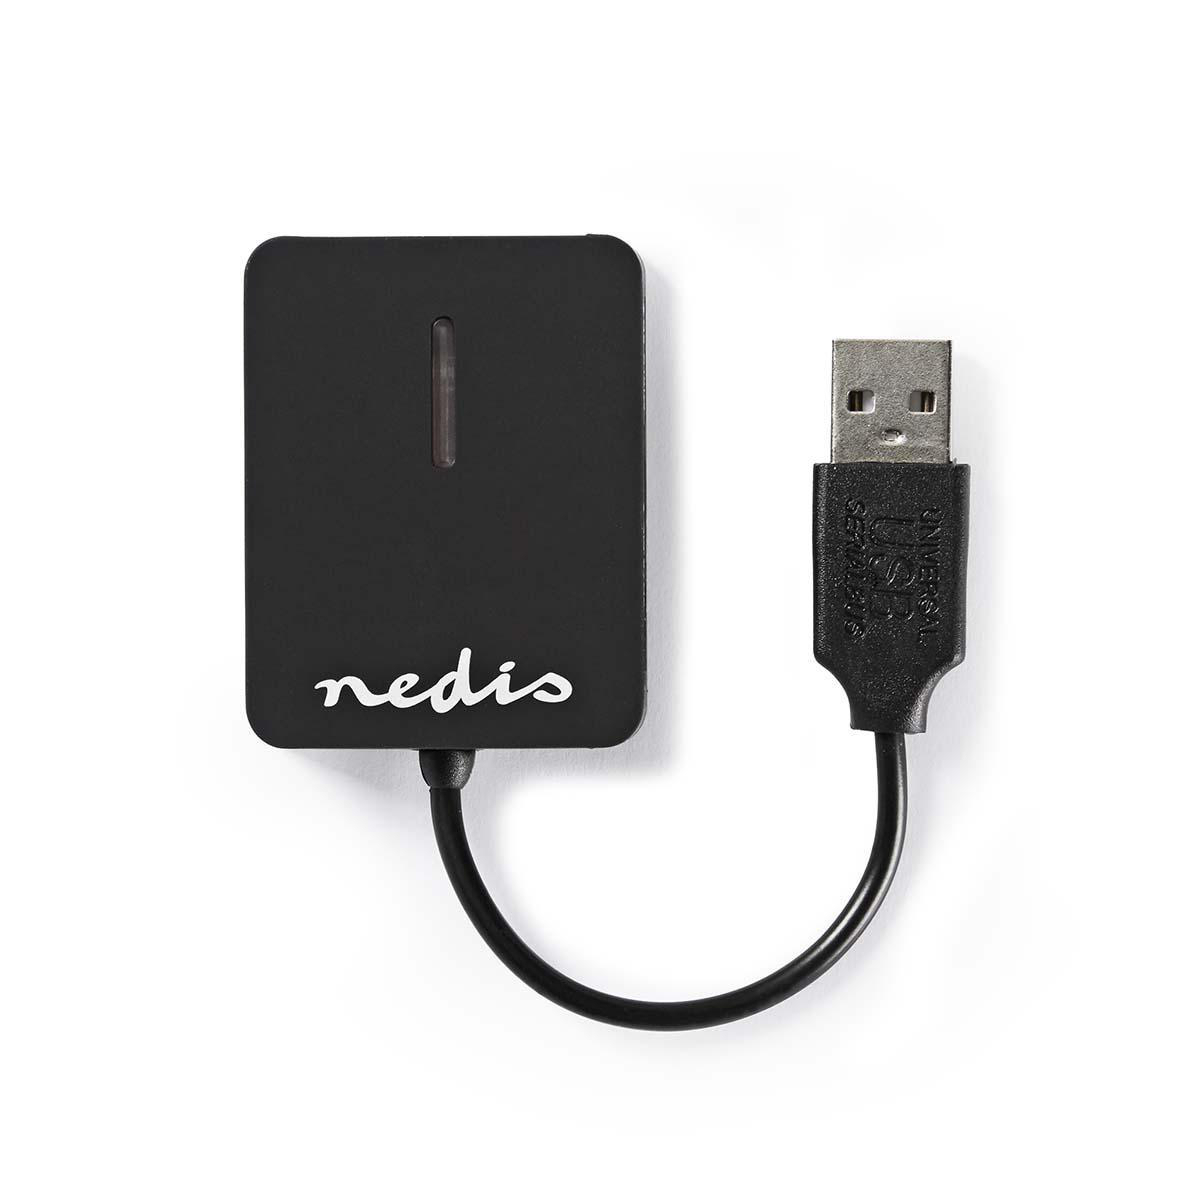 Nedis Kartenleser All-in-One USB 2.0 von Nedis